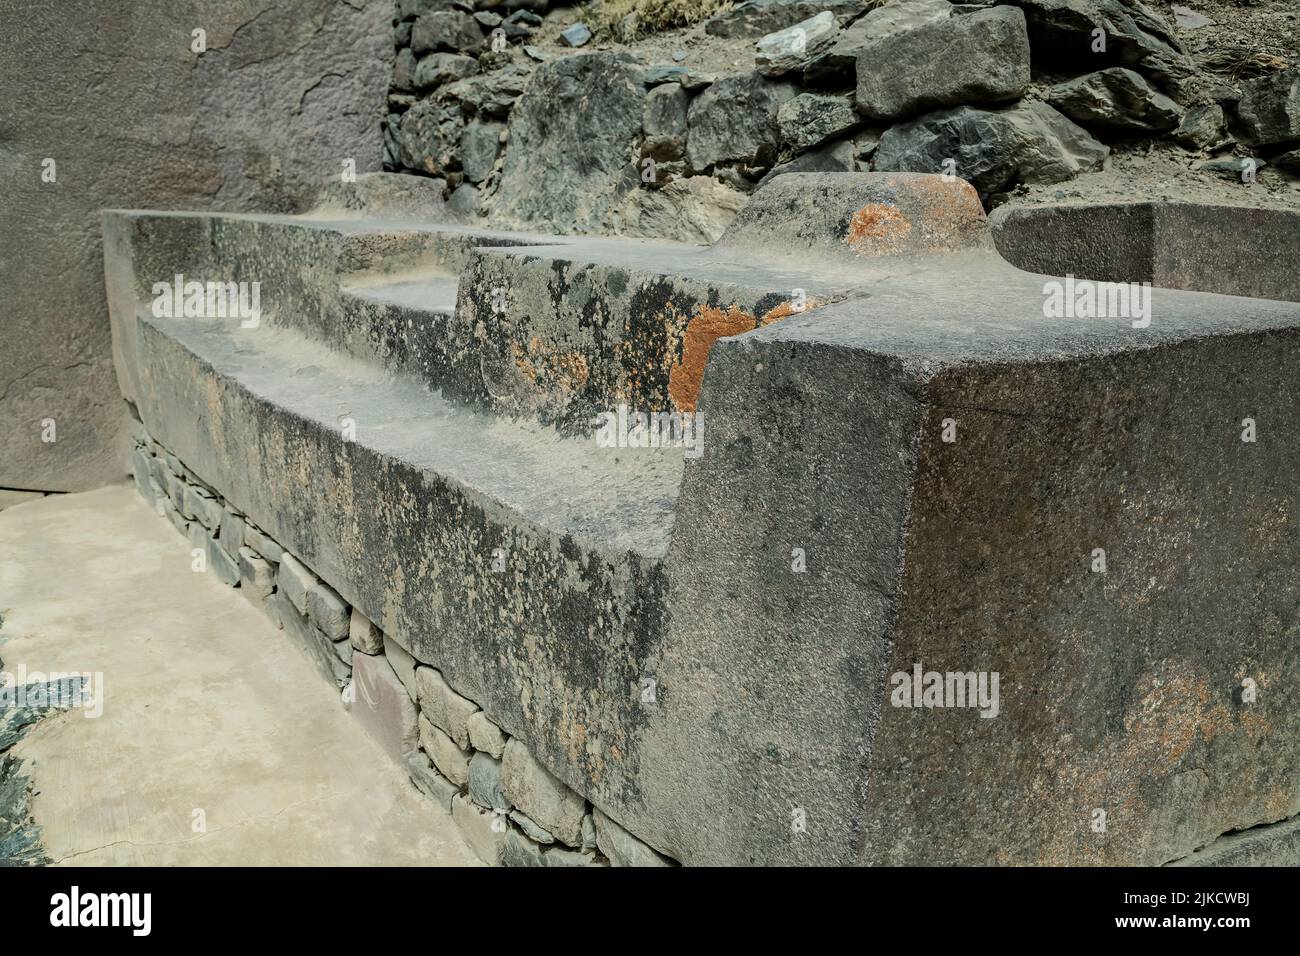 Trono de piedra tallada, ruinas incas de Ollantaytambo, Ollantaytambo, Urubamba, Cusco, Perú Foto de stock